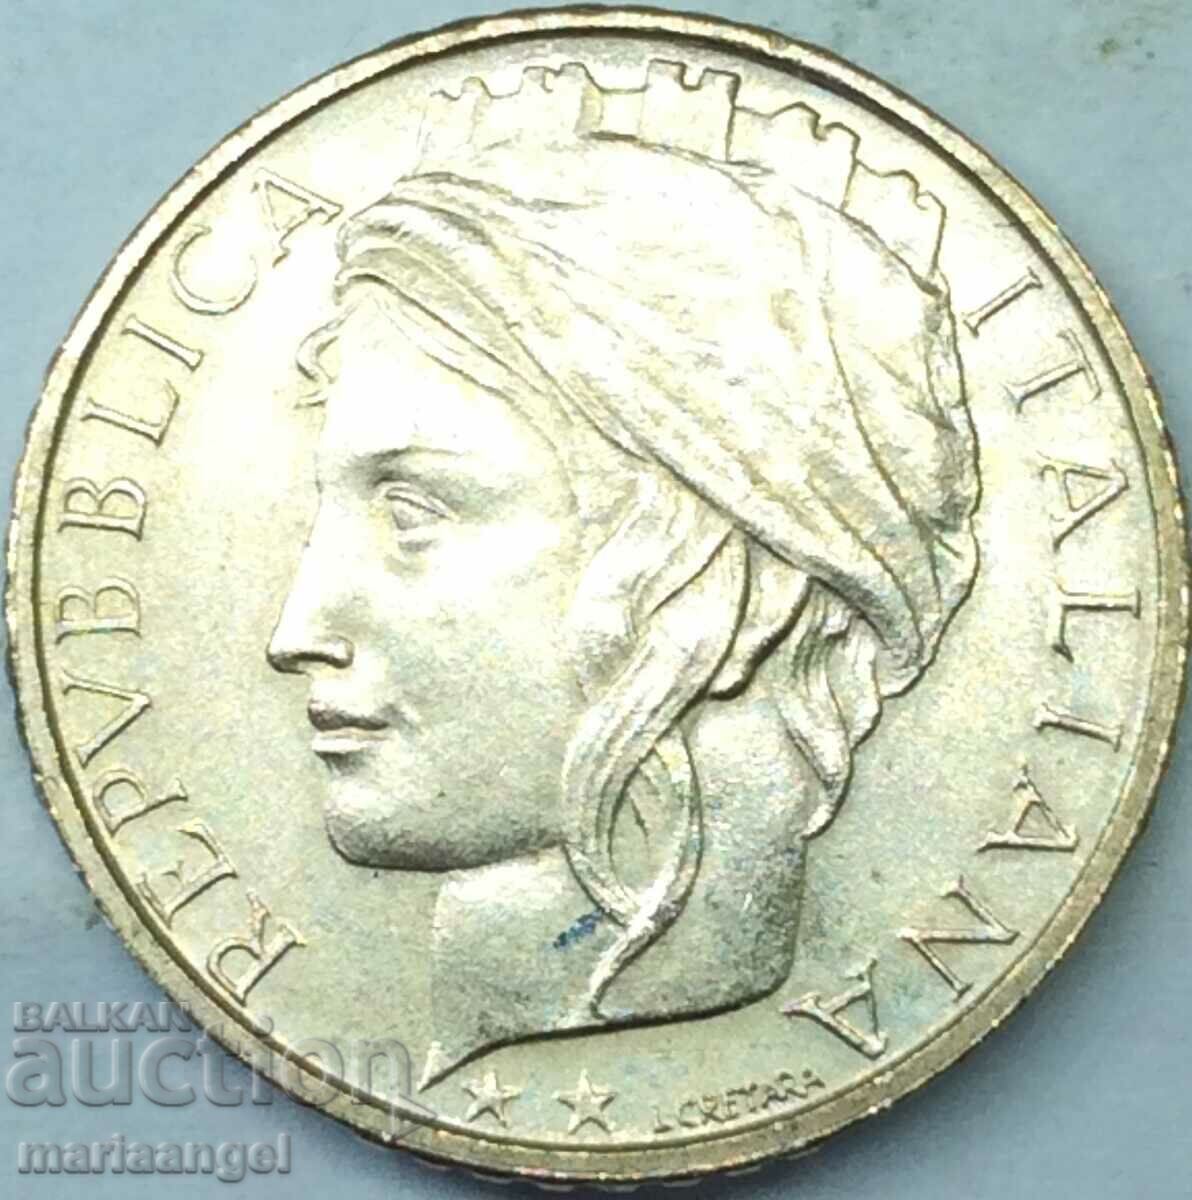 100 λιρέτες 1997 Ιταλία